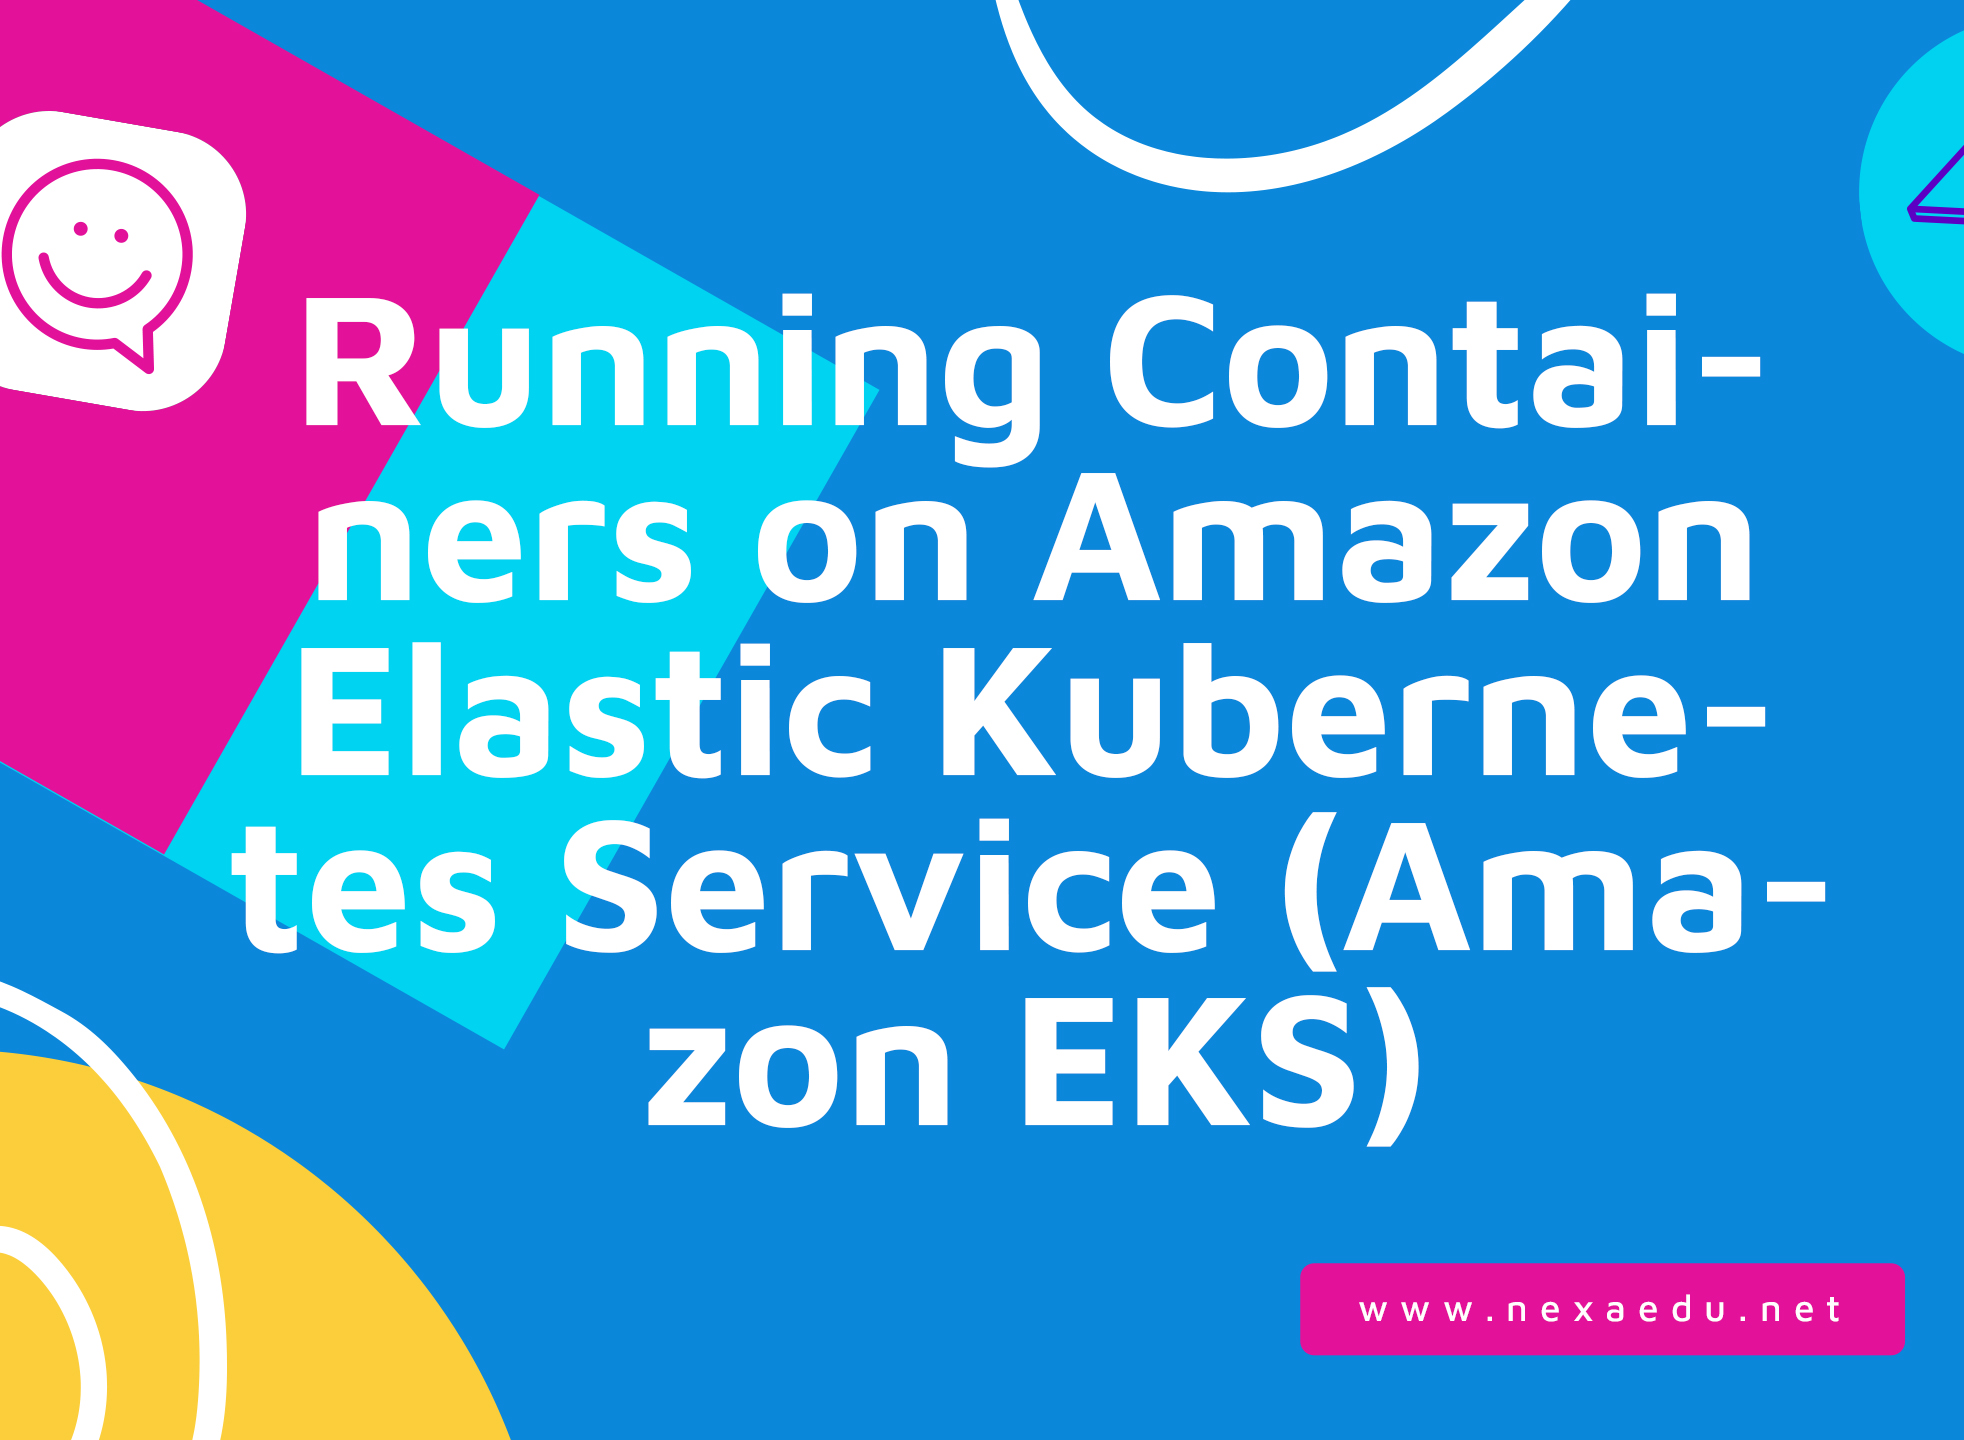 Running Containers on Amazon Elastic Kubernetes Service (Amazon EKS)